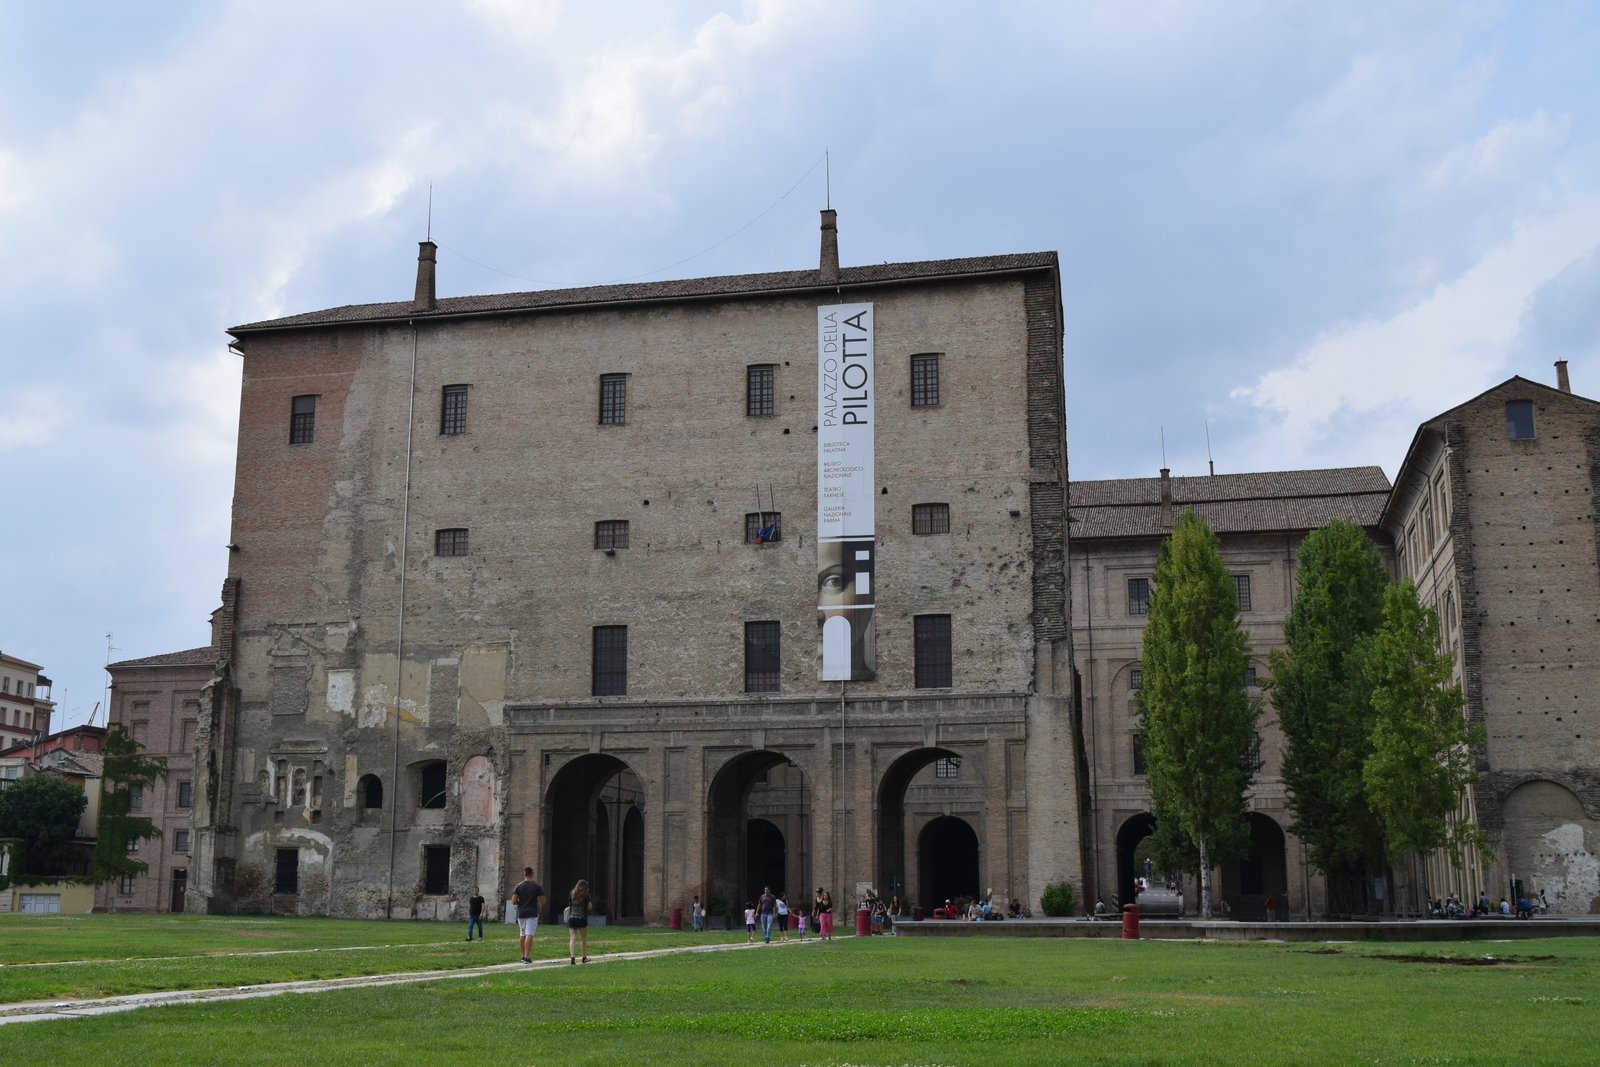 Palazzo della Pilotta in Parma, Italy. ouritalianjourney.com